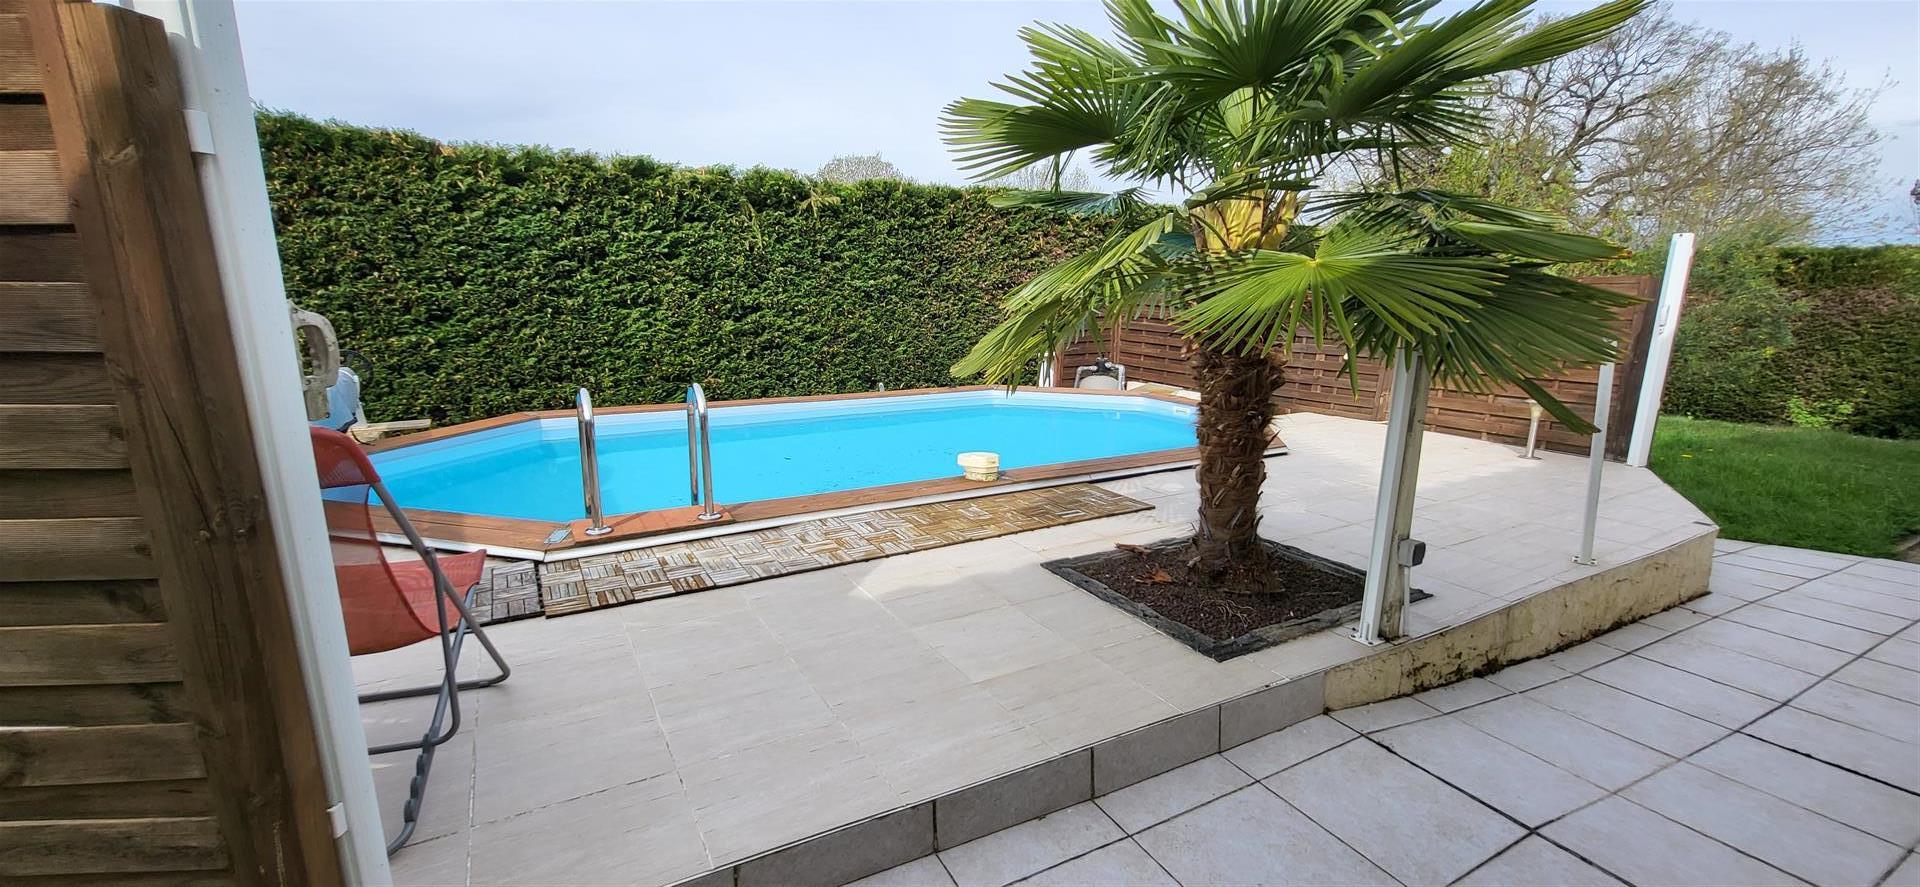 Gelijkvloers huis met tuin 800 m2 en zwembad 